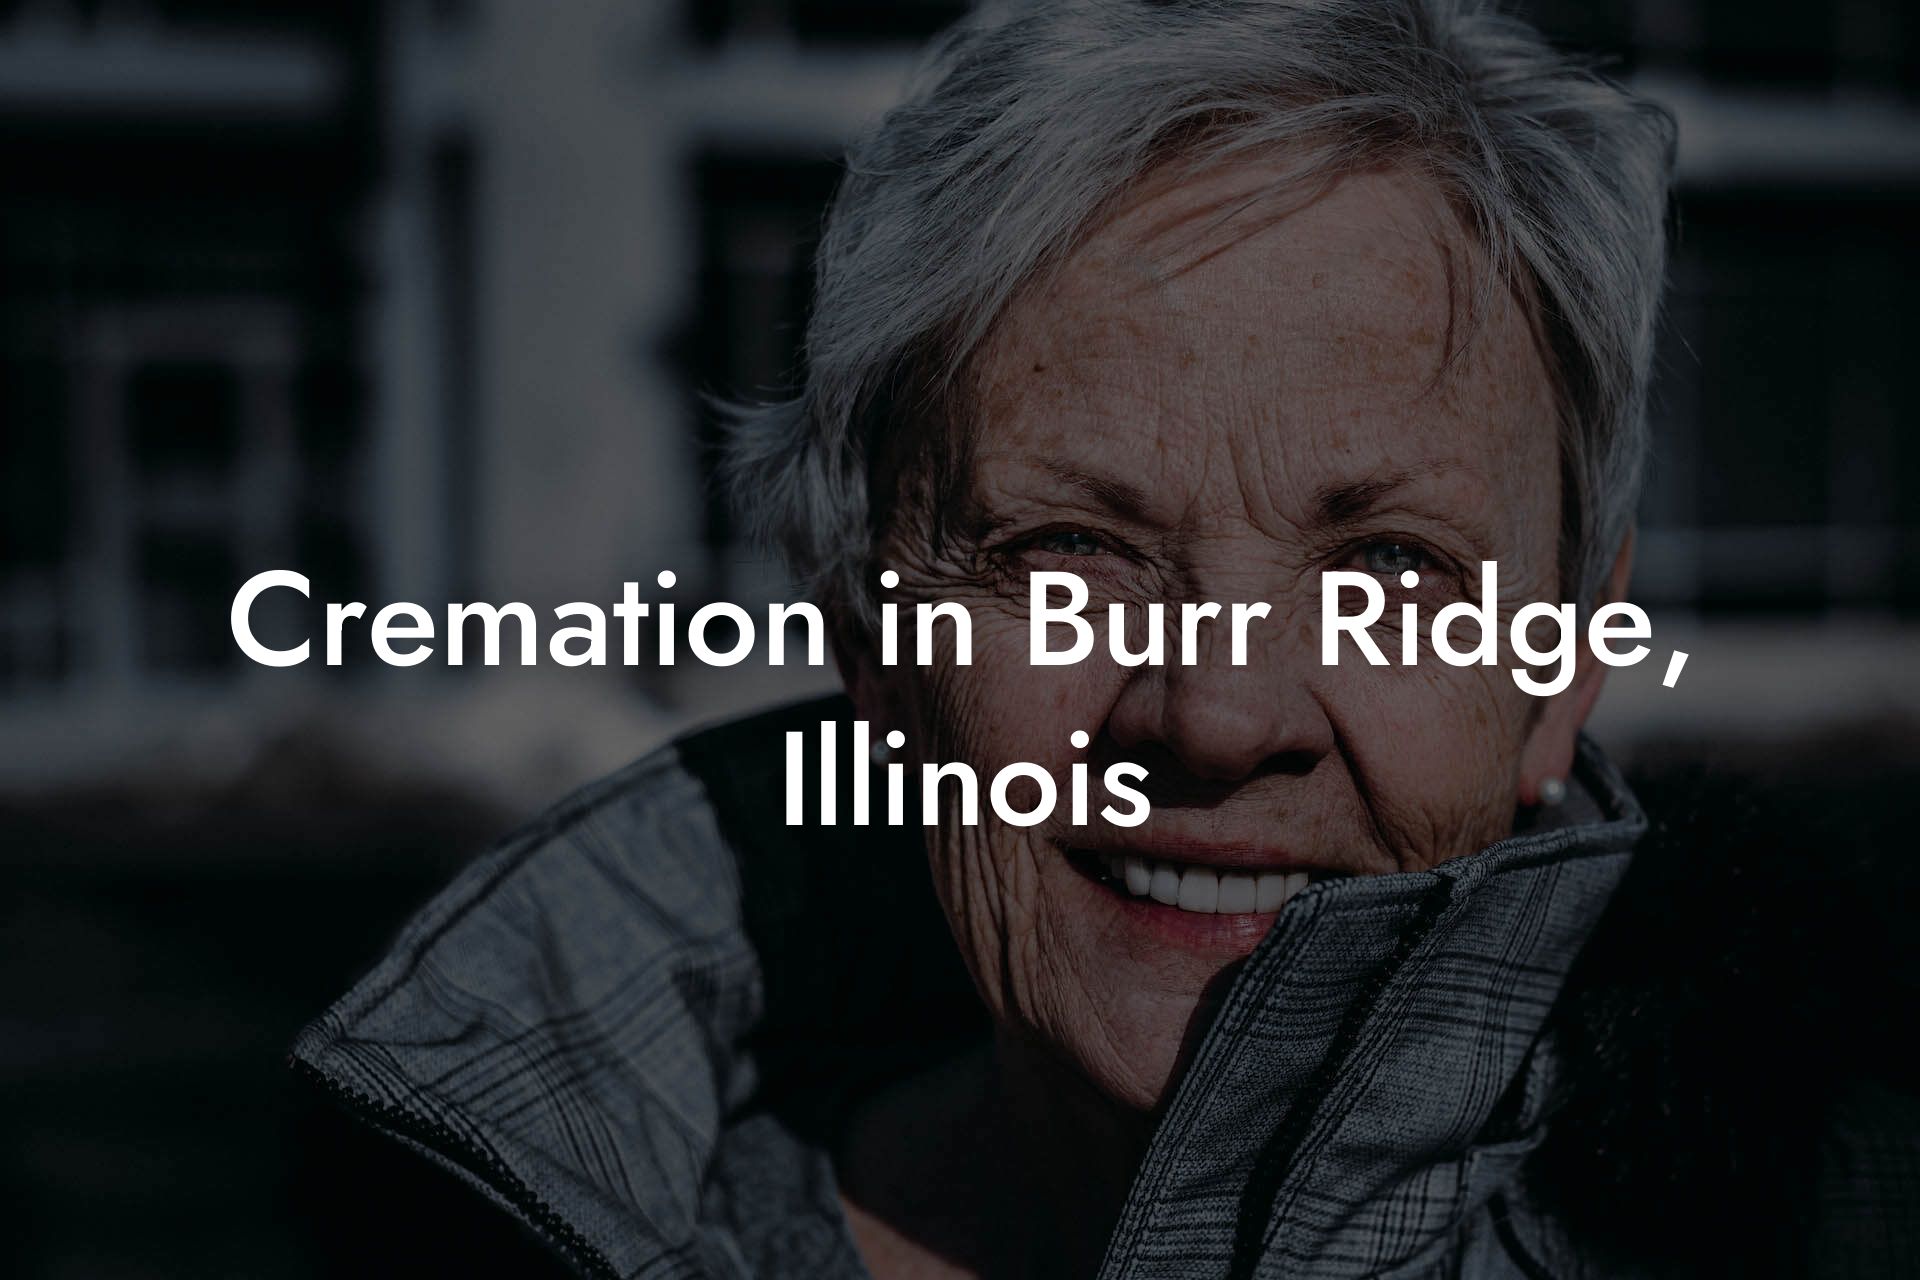 Cremation in Burr Ridge, Illinois